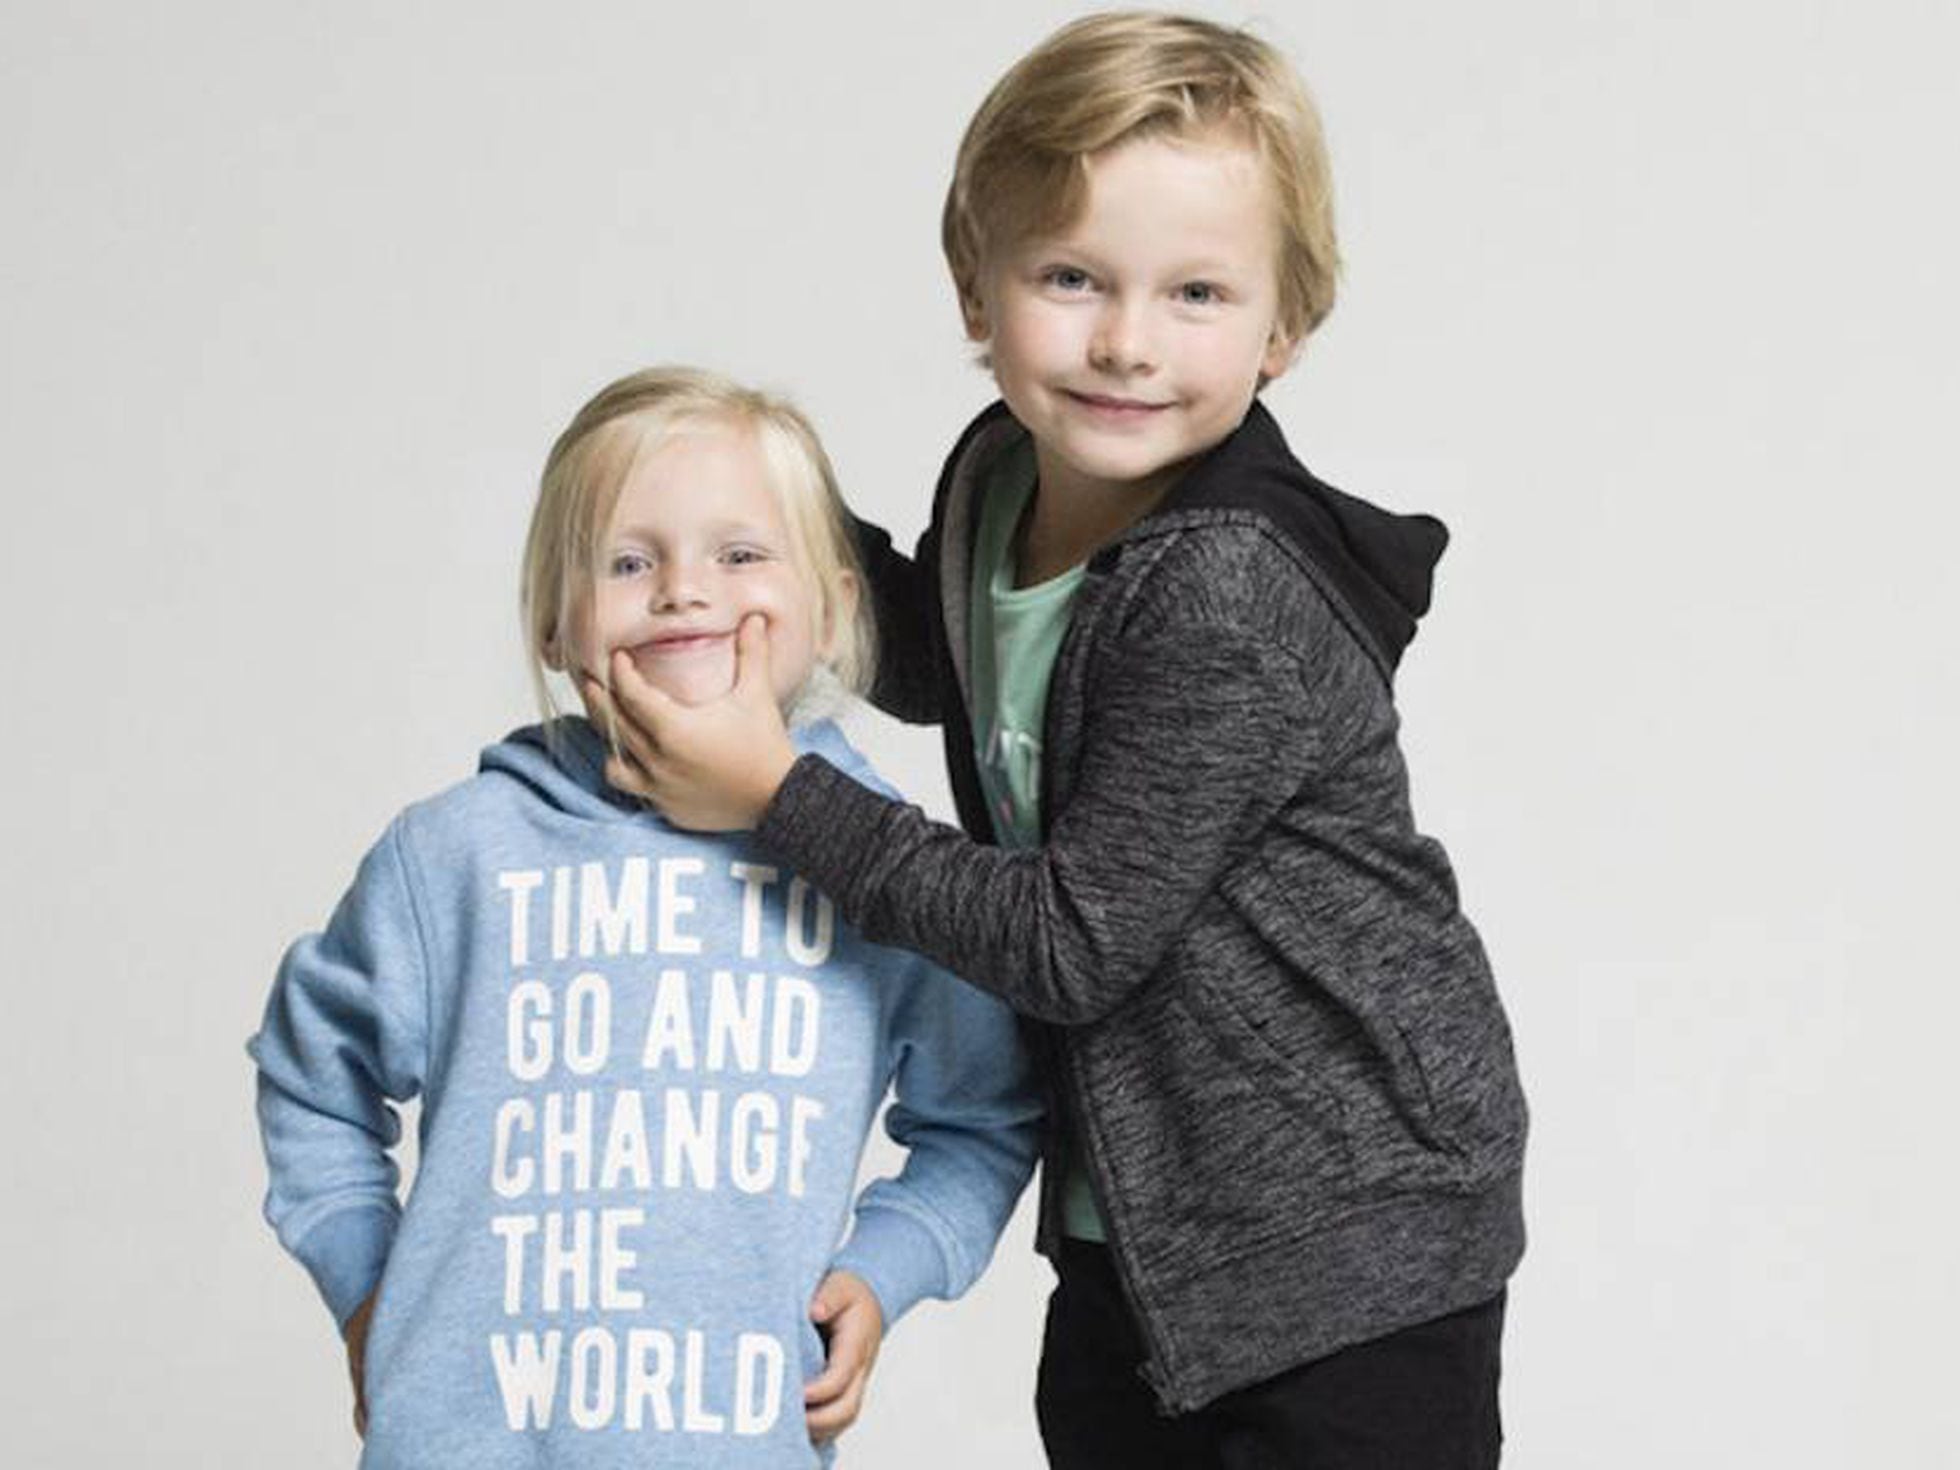 Proceso Estragos Contabilidad Las marcas de moda fuerzan los estereotipos de los niños antes, incluso, de  que descubran quiénes son” | Mamas & Papas | EL PAÍS